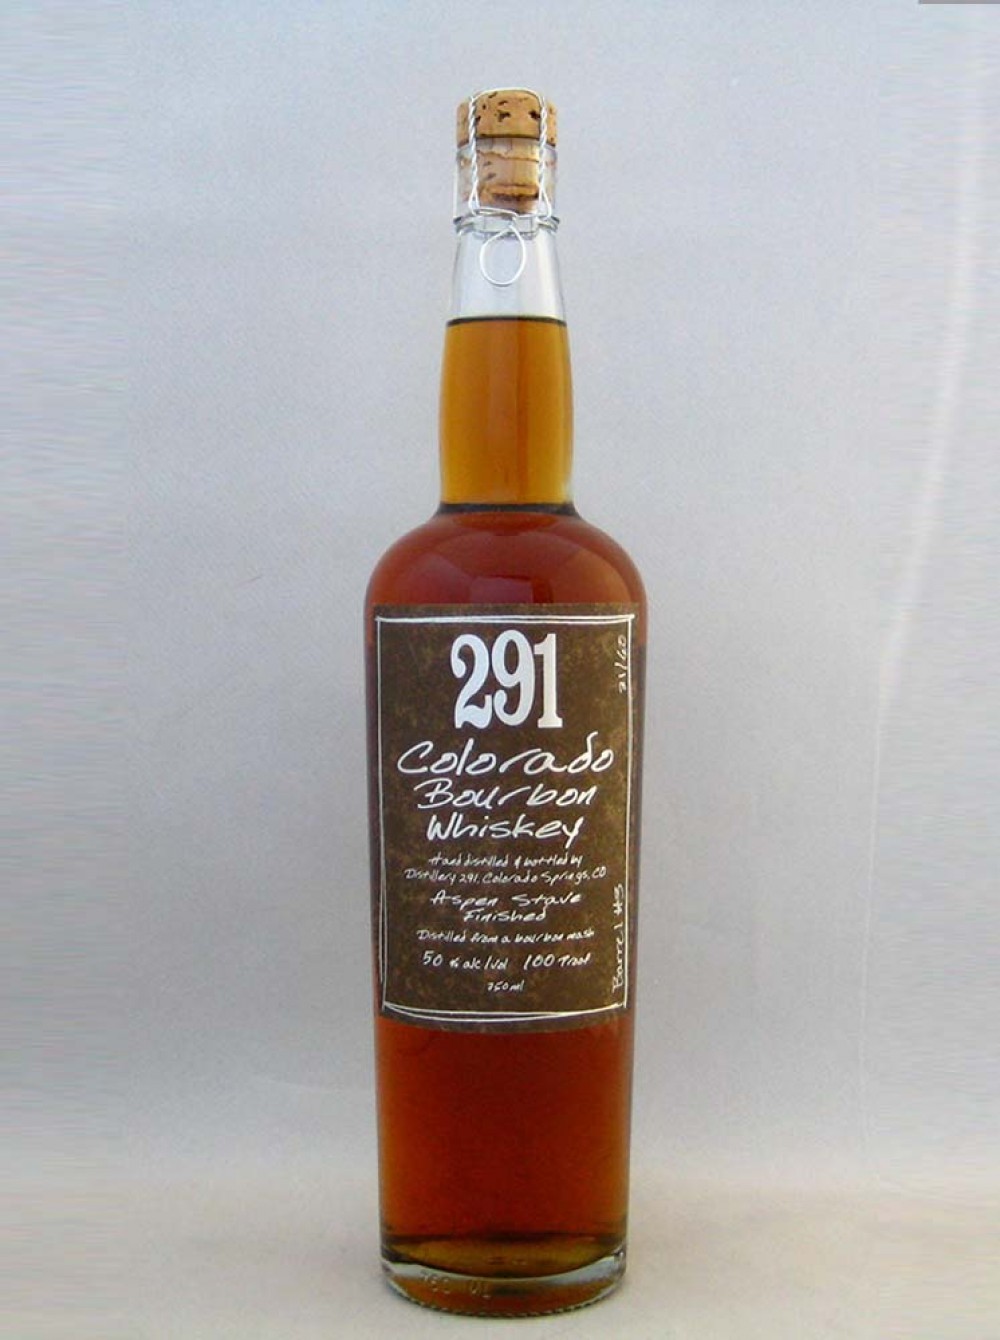 291 Colorado Bourbon